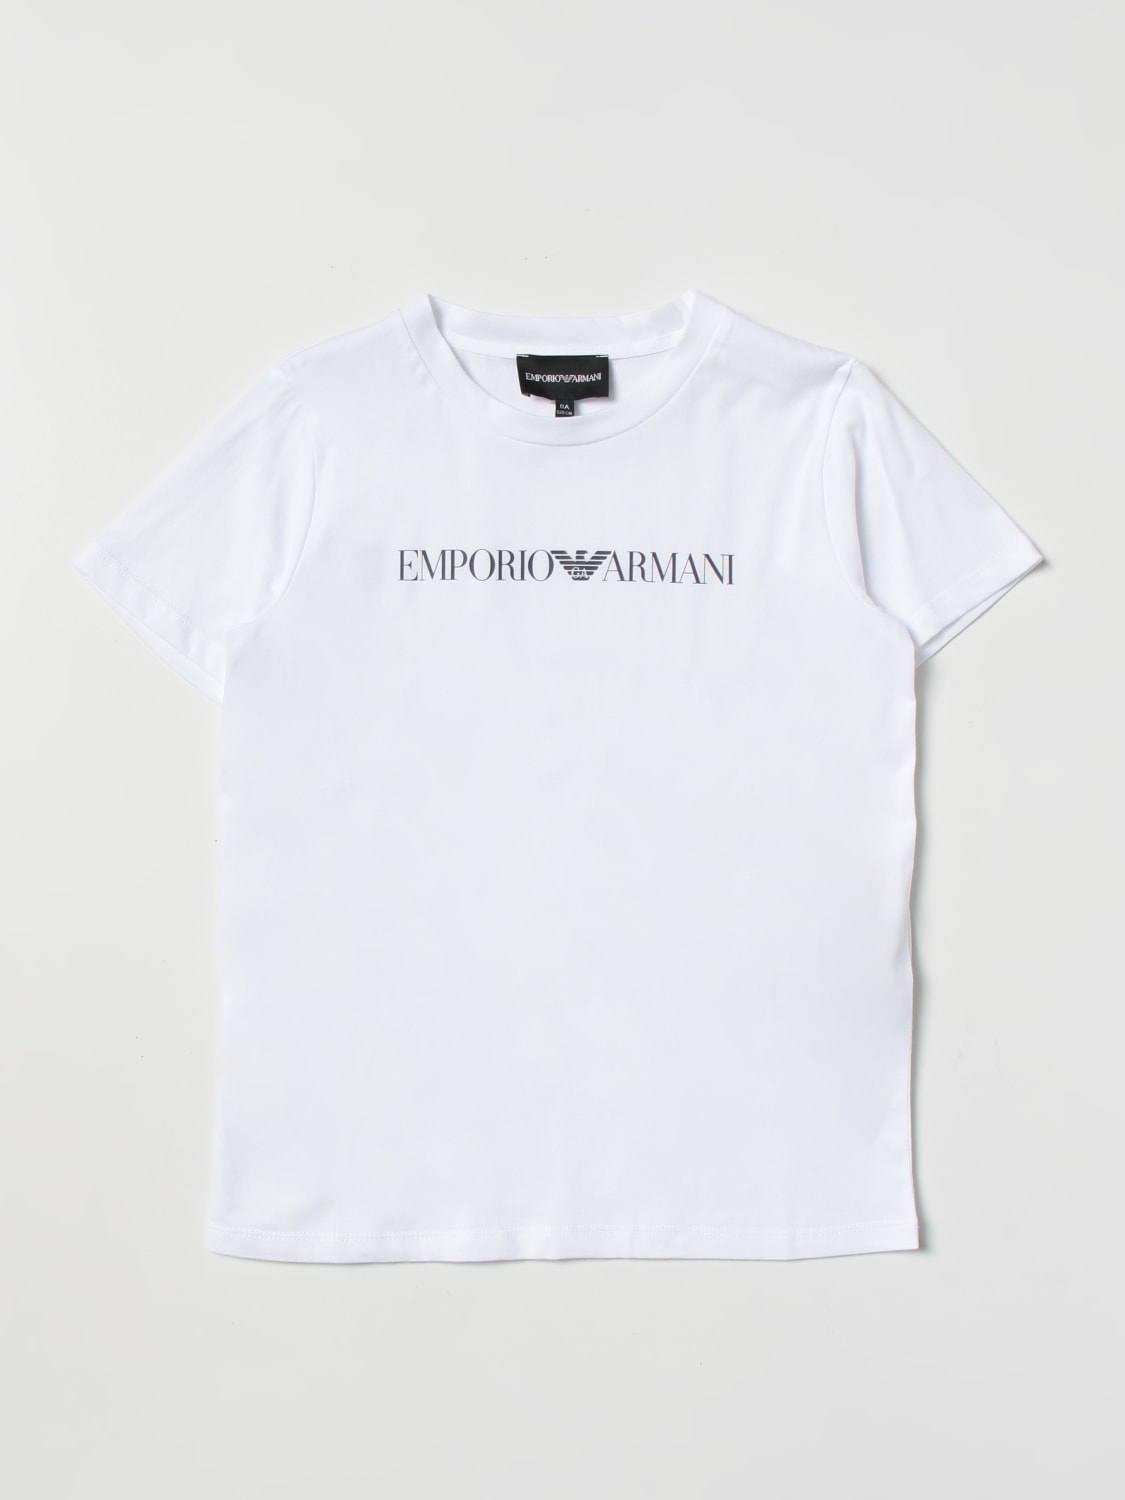 EMPORIO ARMANI KIDS: Camiseta niño, 1 | Camiseta Emporio Armani Kids 8N4TN51JPZZ en línea en GIGLIO.COM